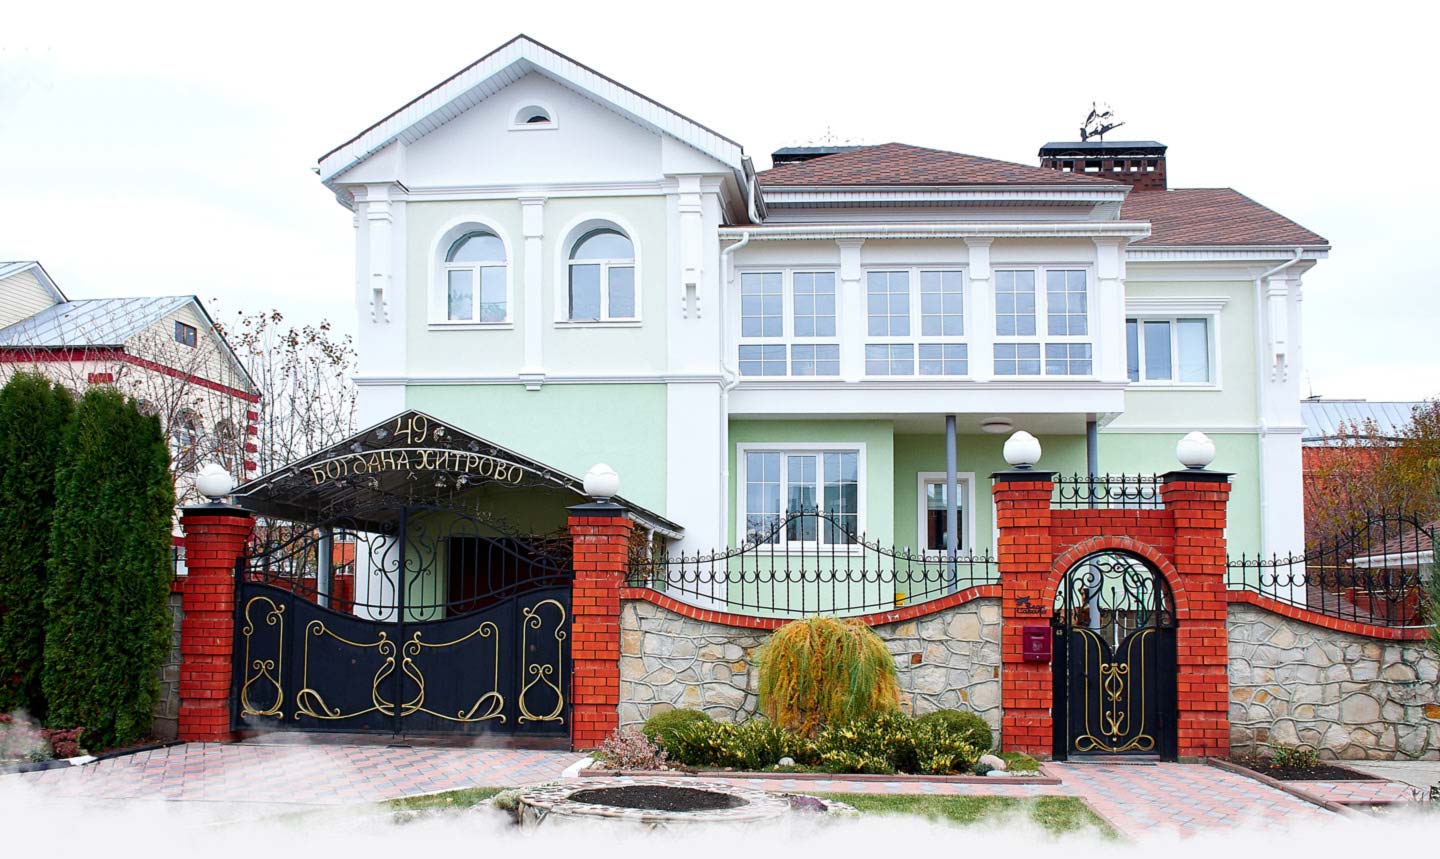 Дом на Богдана Хитрово